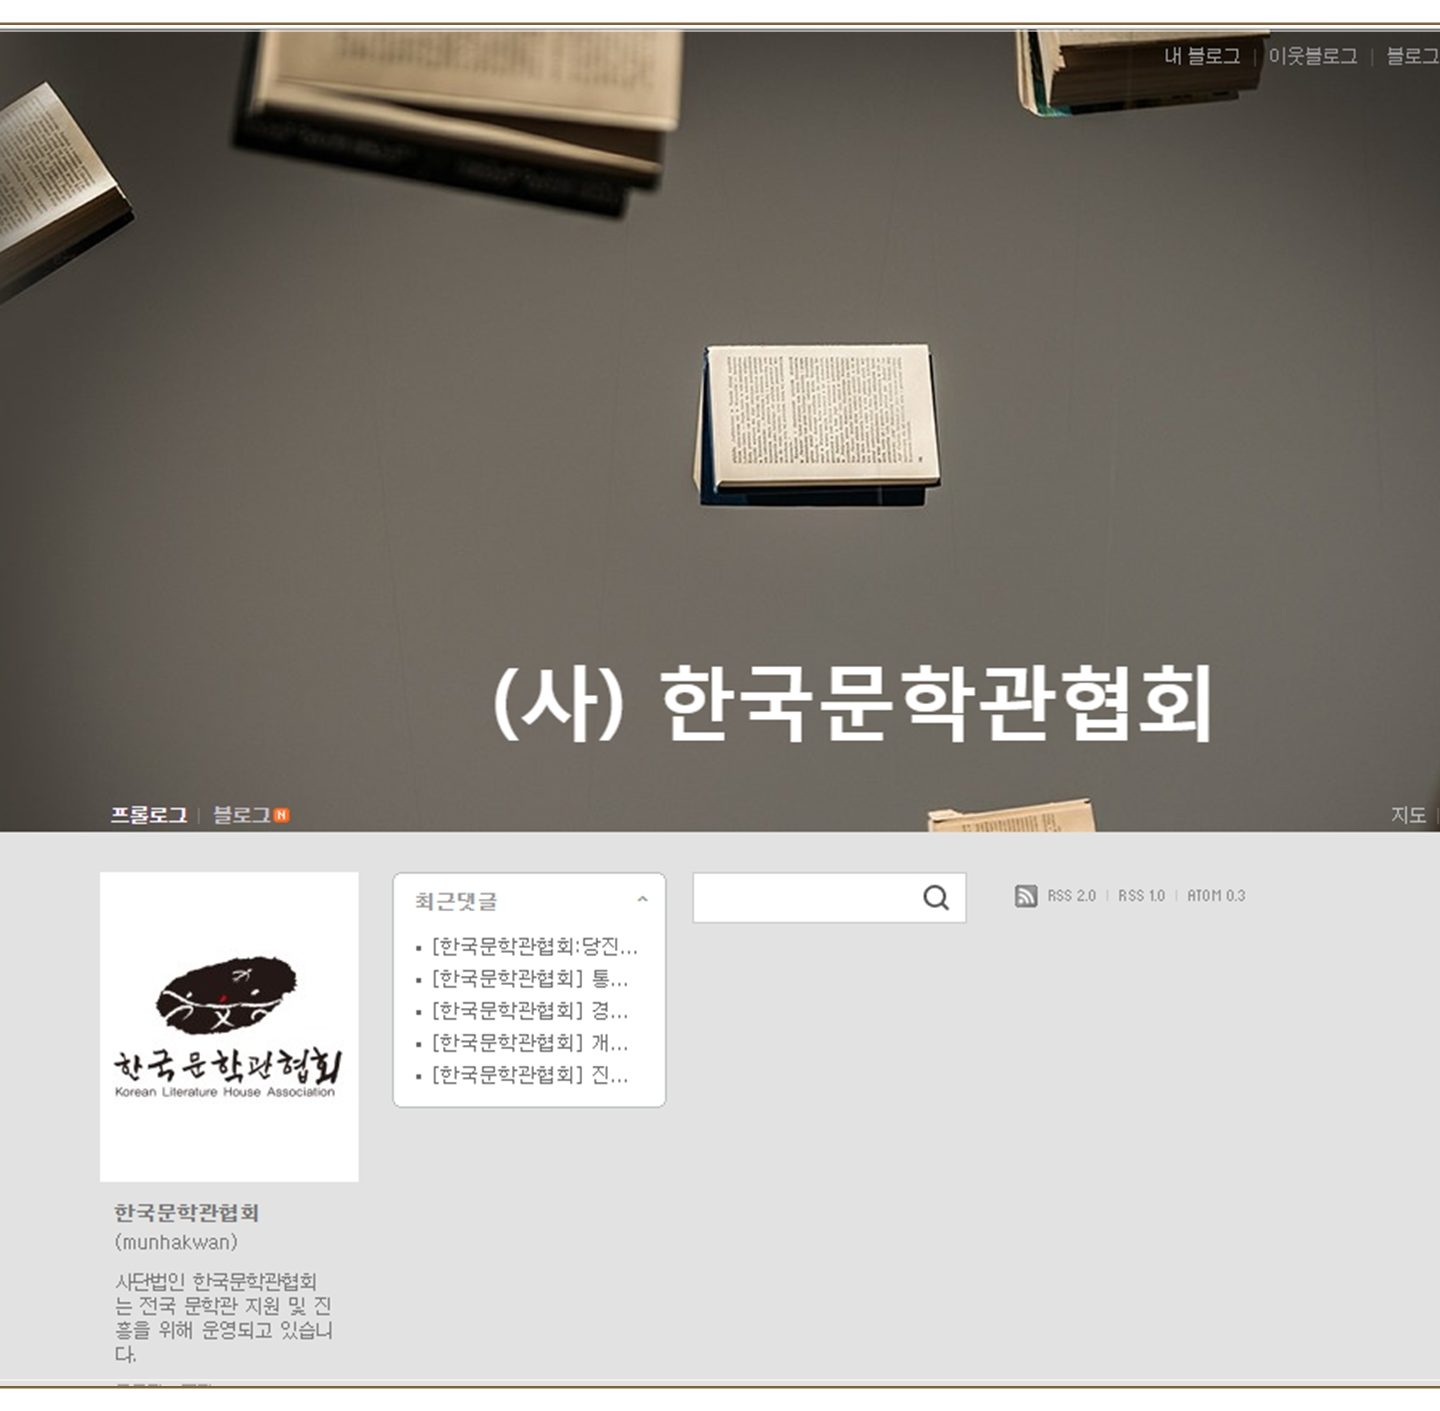 포트폴리오-(사)한국문학관협회